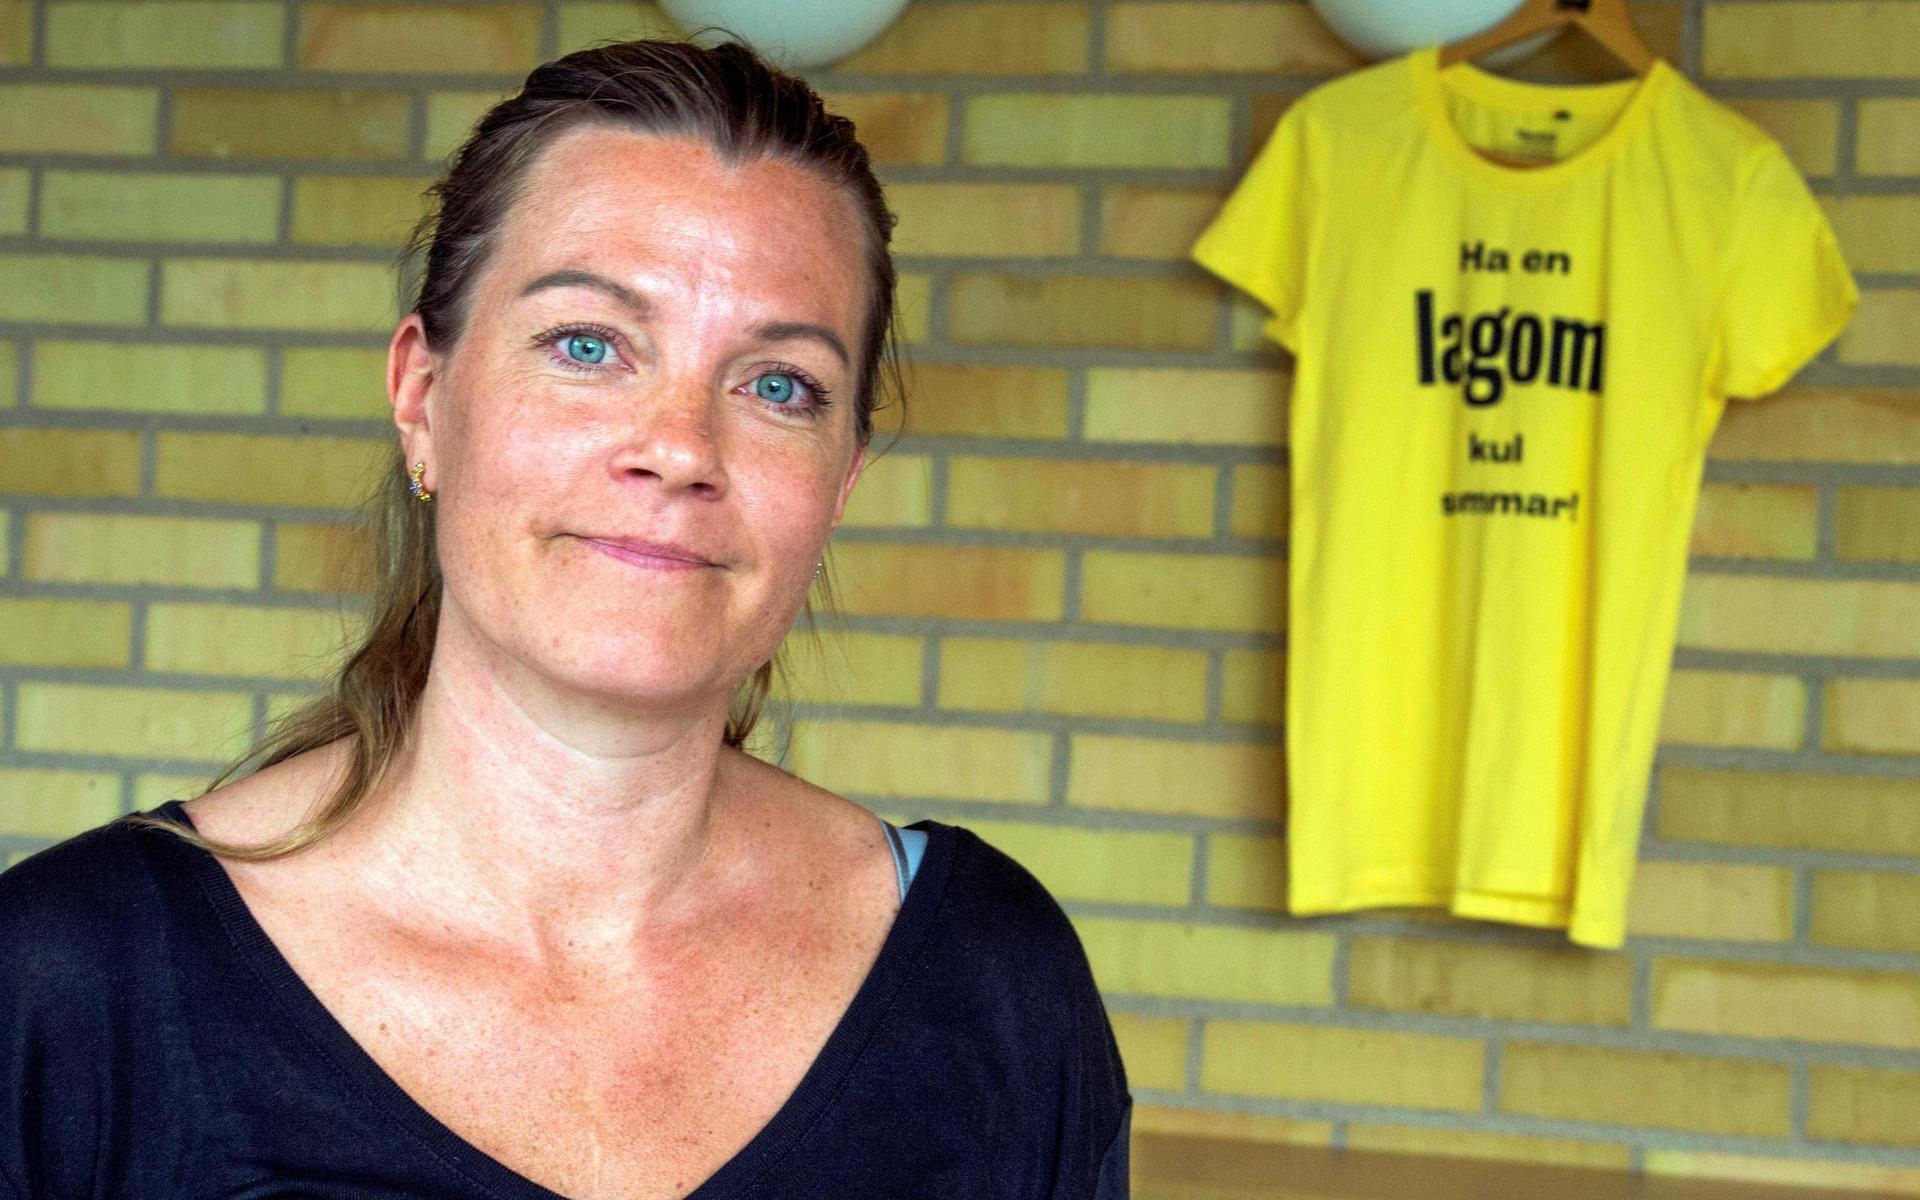 Region Hallands nya lagom-kampanj till ungdomar har än så länge inte fått något större gensvar, men kommunikationsdirektör Johanna Wiechel Steier låter sig inte nedslås. ”Vi kan se att det är många som sett kampanjen i sitt flöde och det är det viktigaste”, säger hon.